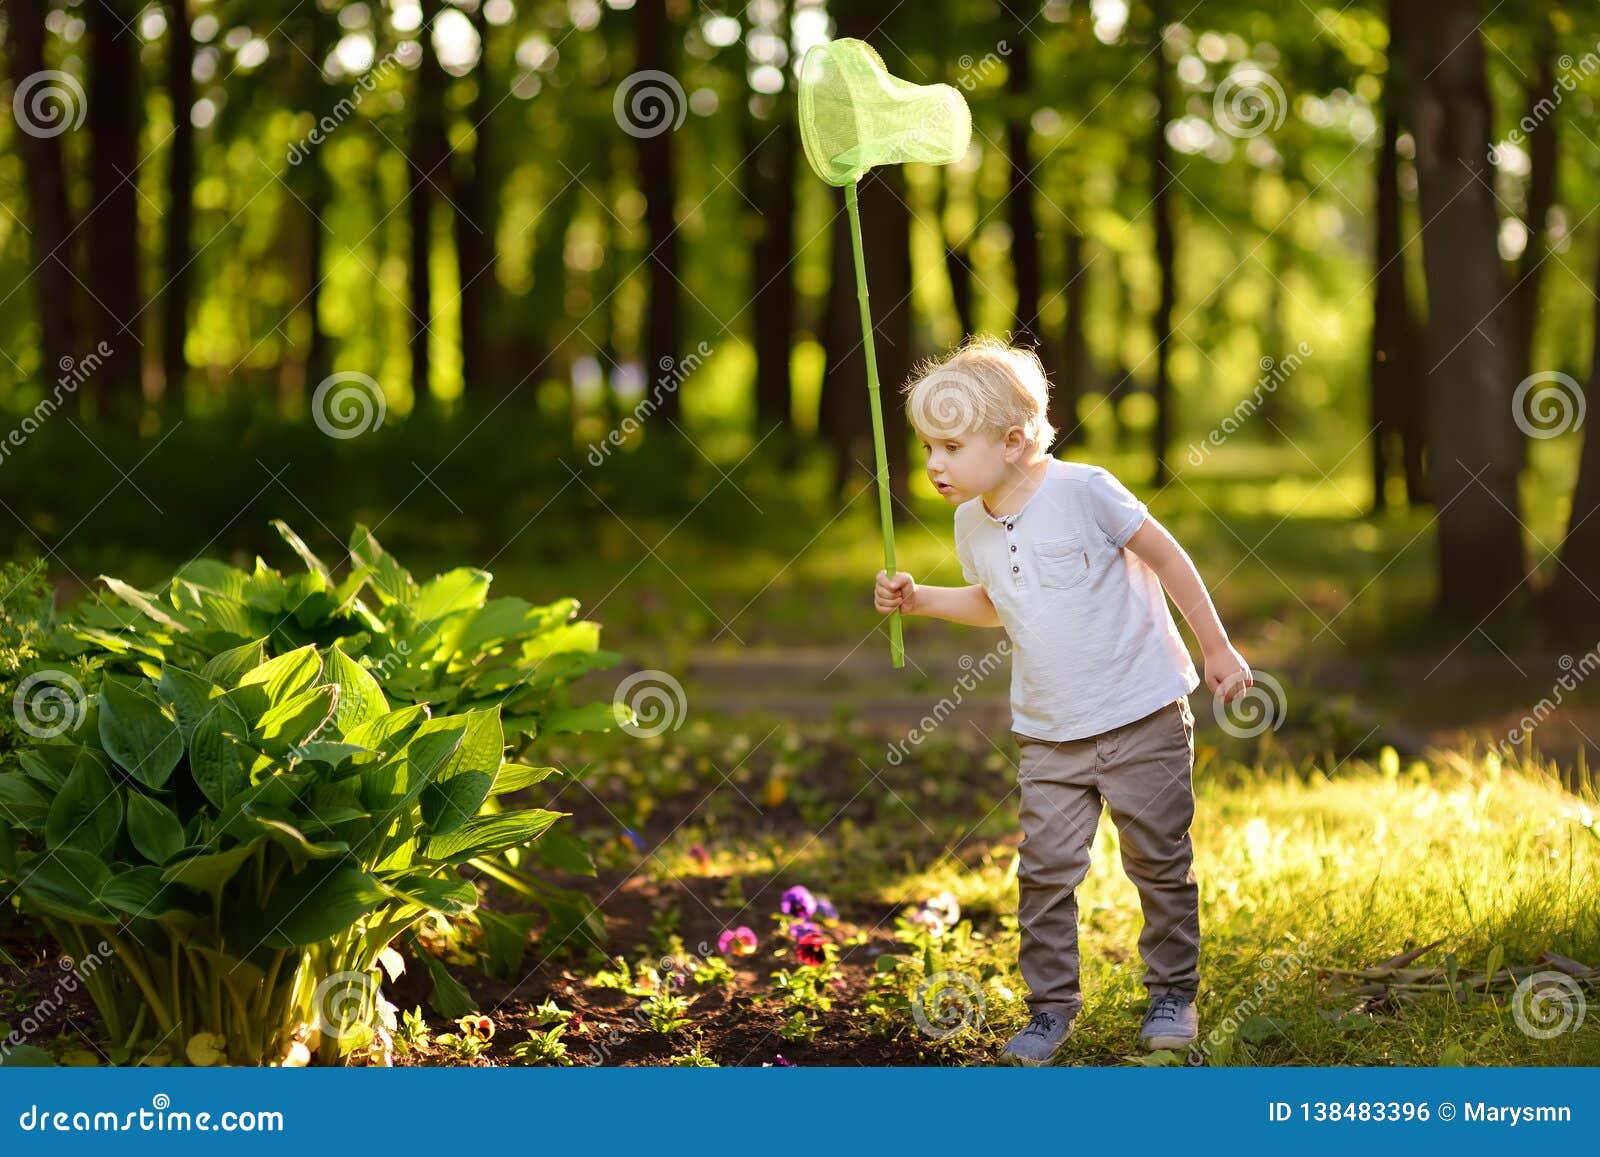 Наблюдать за бабочкой. Ребенок с сачком. Мальчик с сачком. Дети ловят бабочек. Дети ловят бабочек сачком.